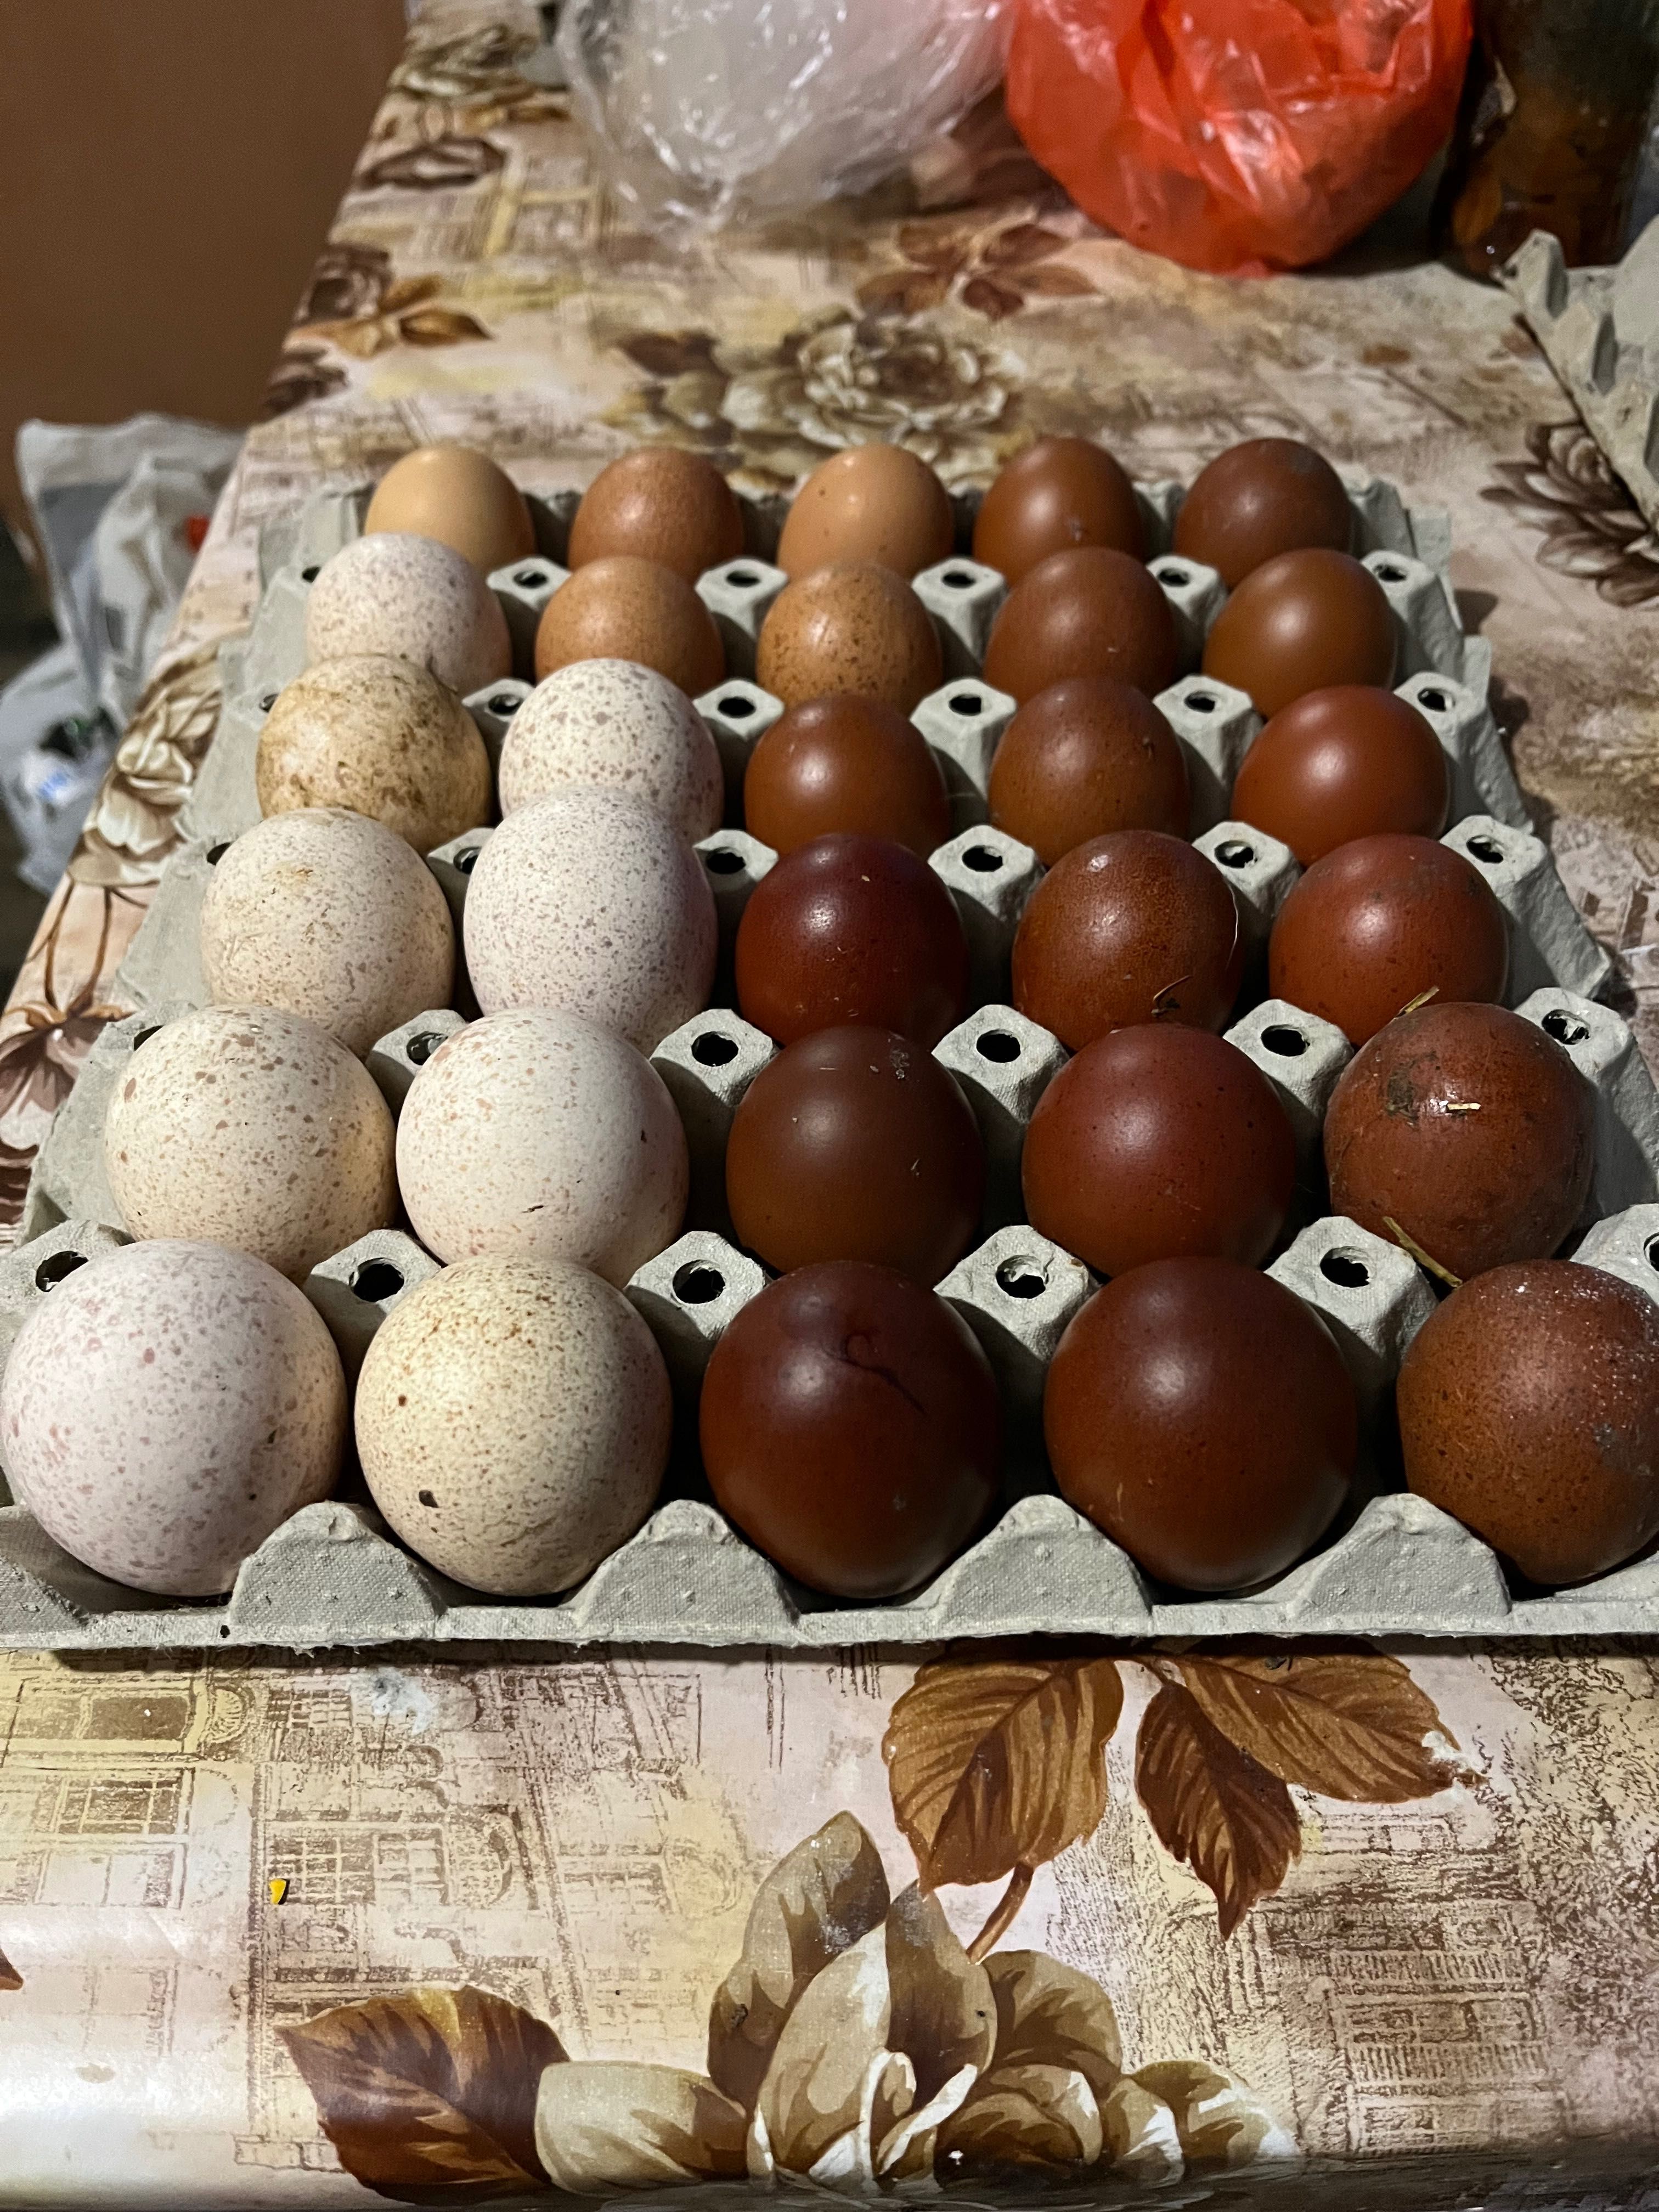 Оплодени яйца за люпене от кокошки и пуйки